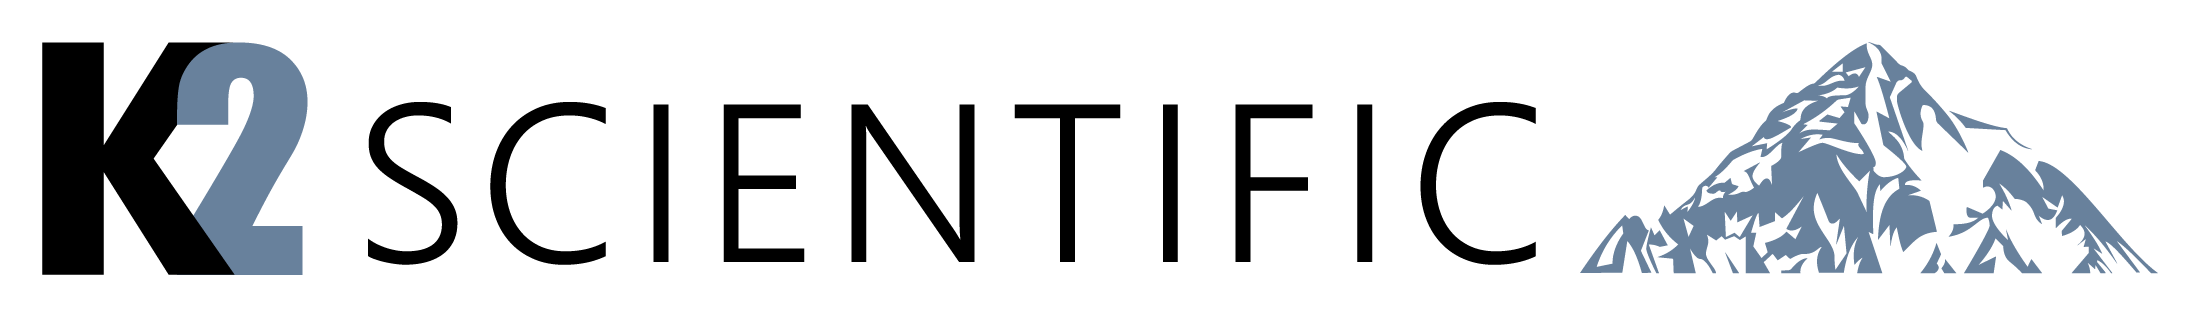 K2science Logo Full Color